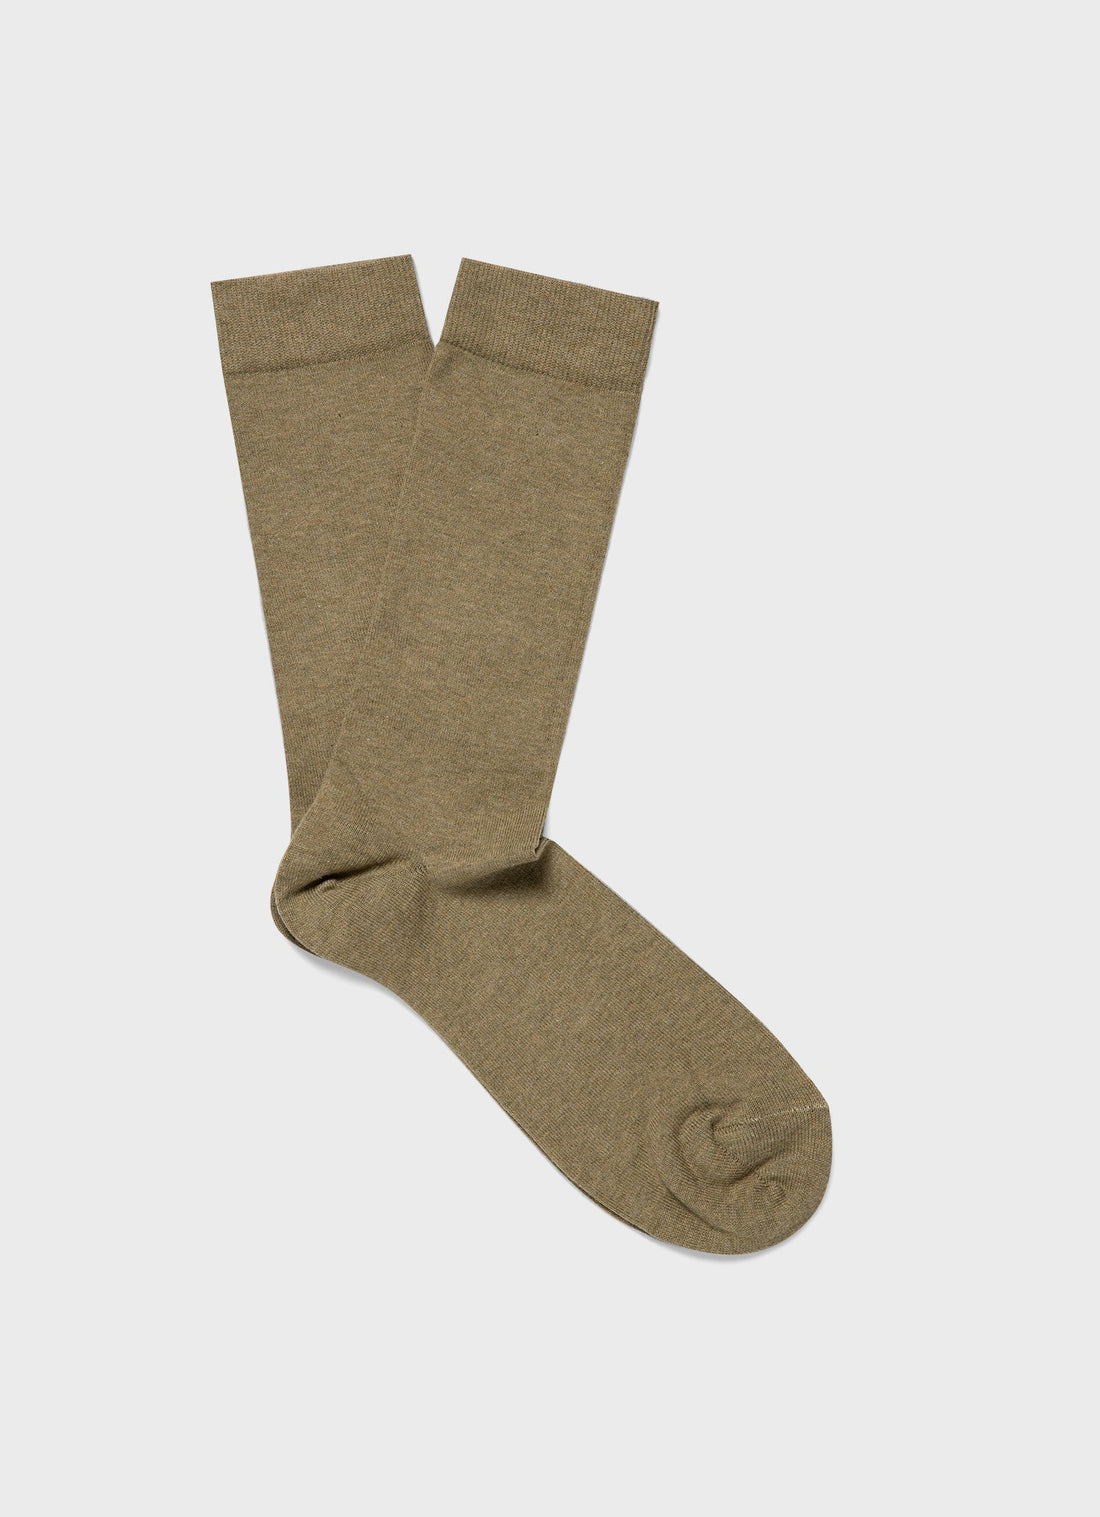 Men's Cotton Socks in Pale Khaki